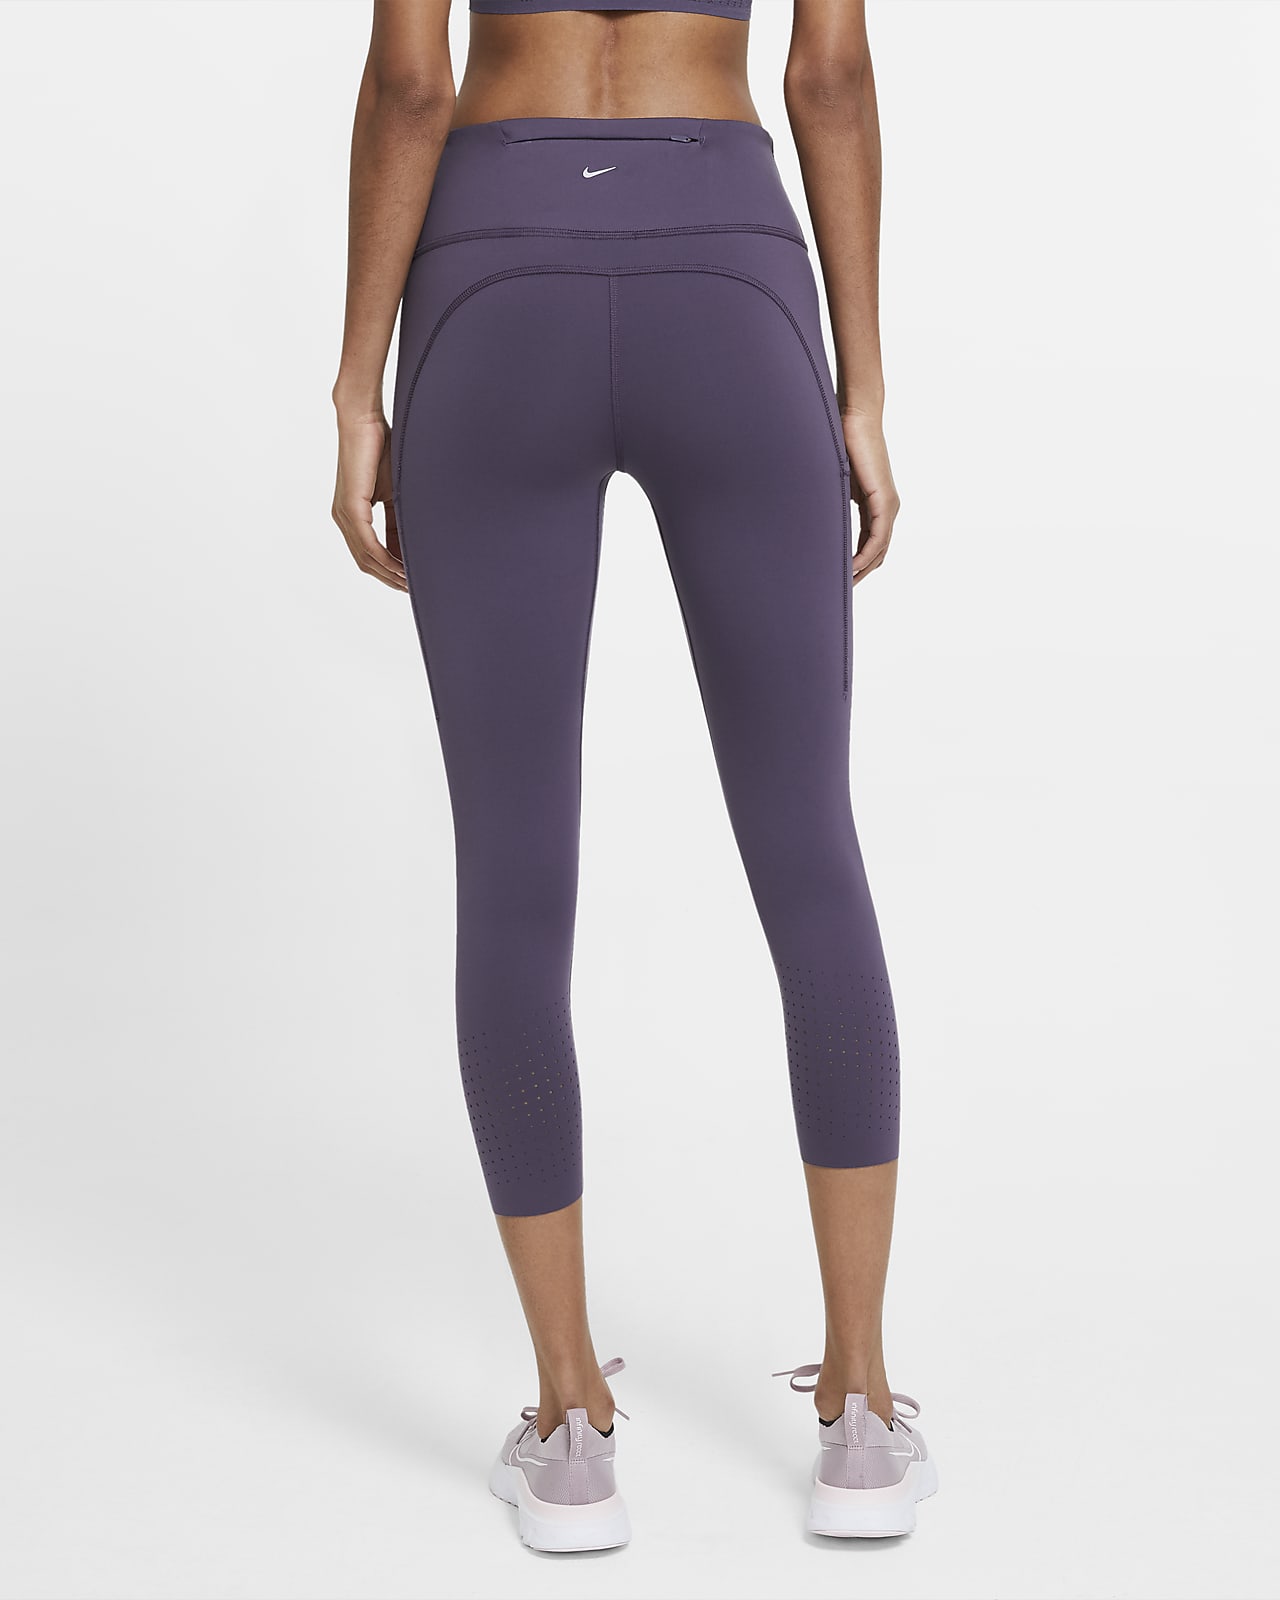 women's nike purple leggings